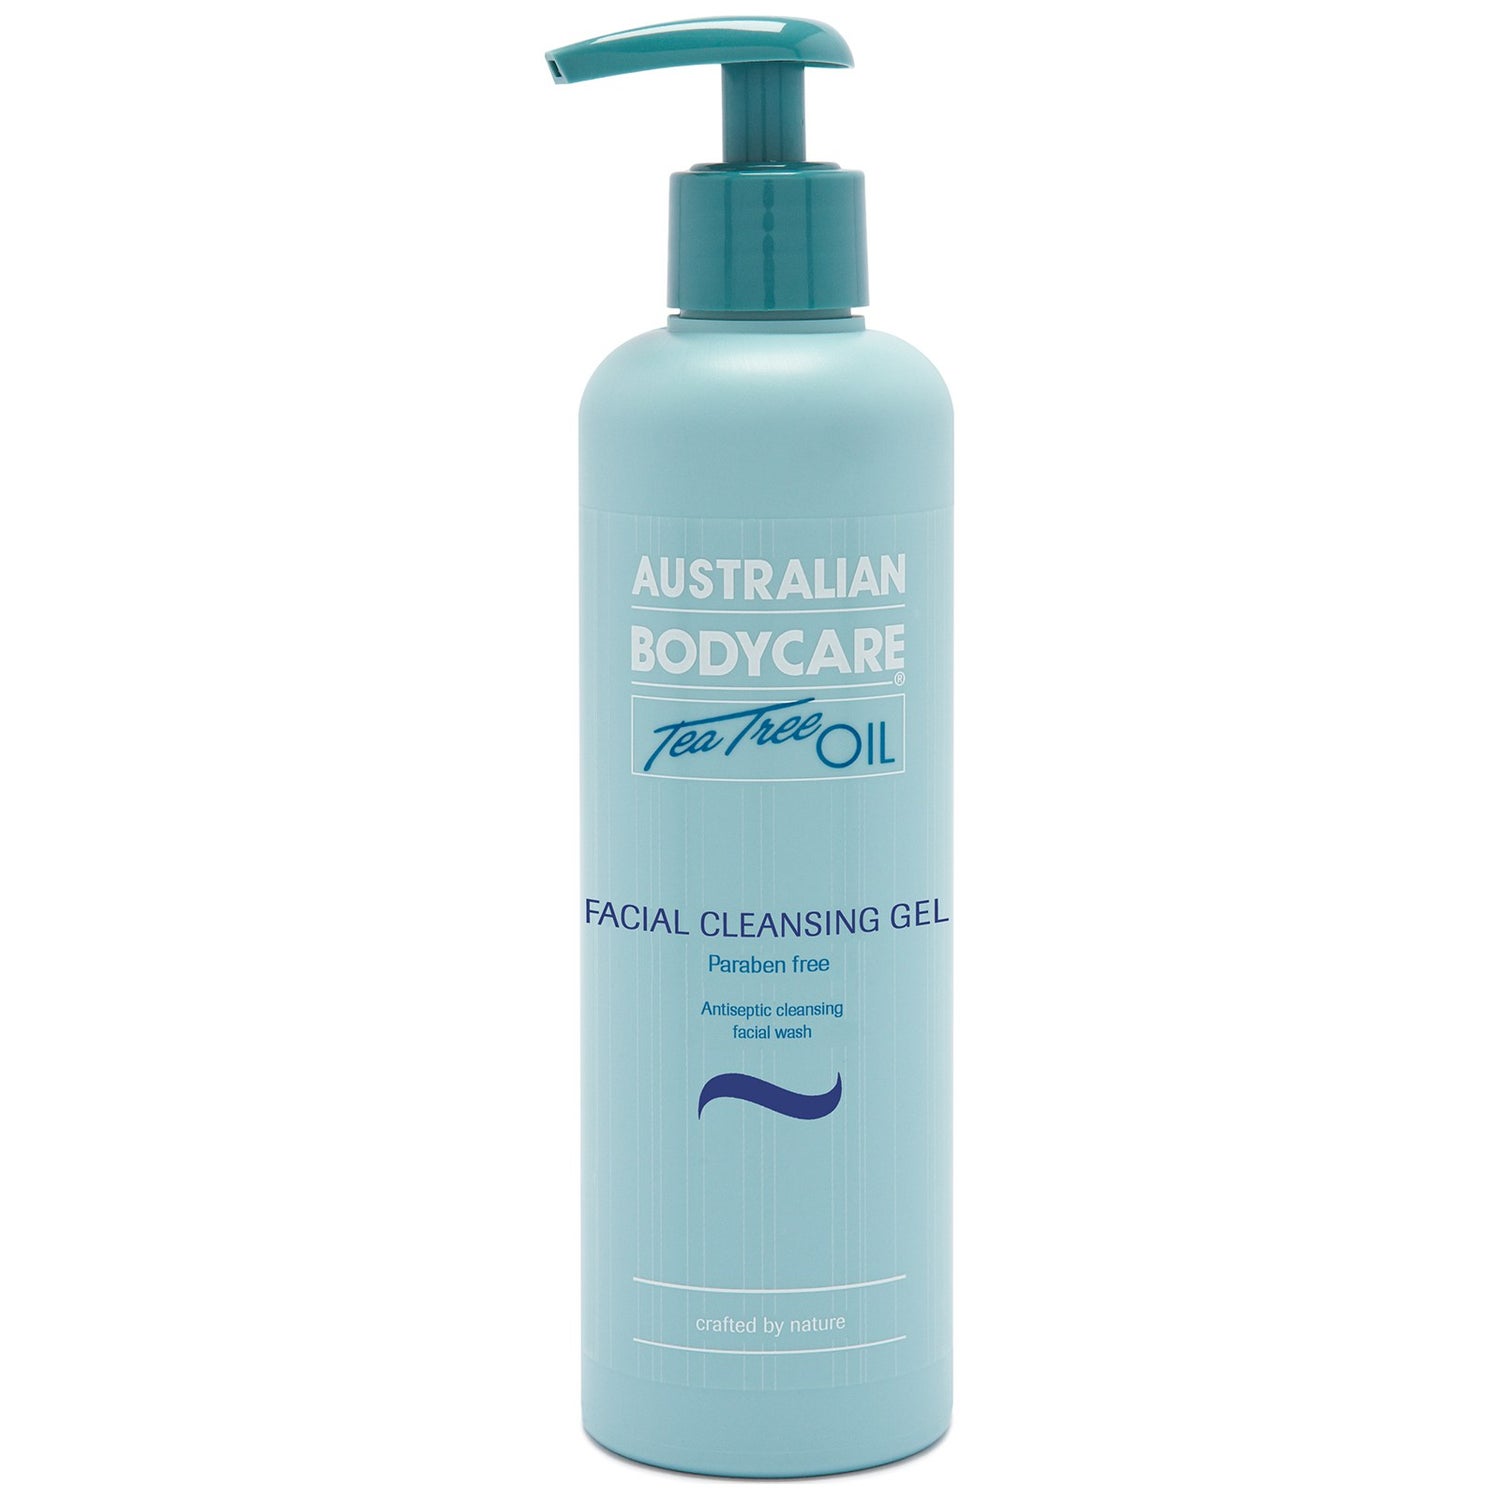 Очищающий гель для лица Australian Bodycare Facial Cleansing Gel (250 мл)